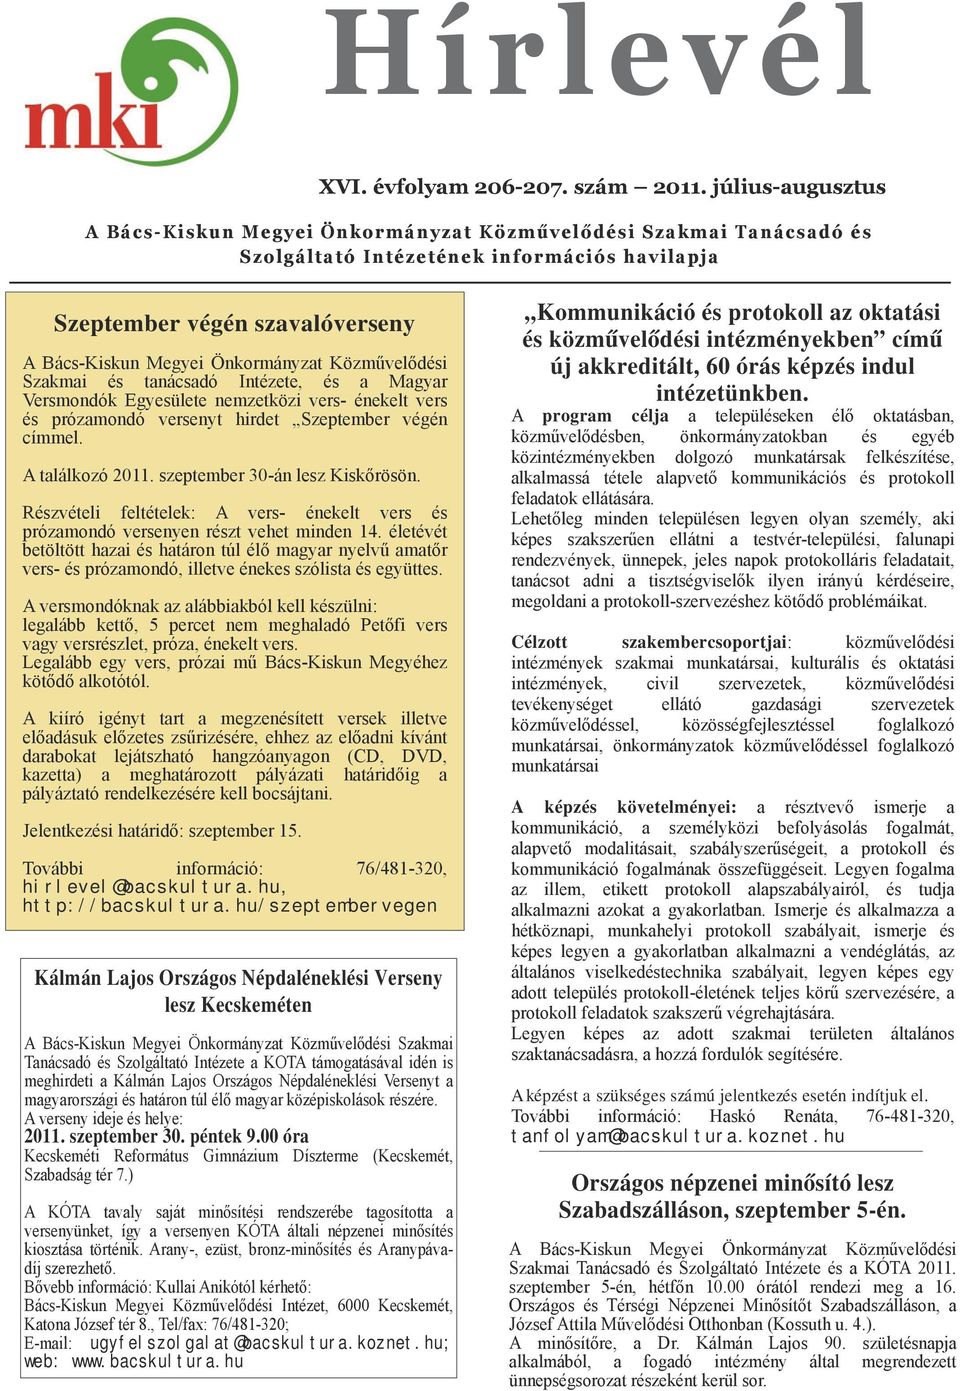 Szkmi és tnácsdó Intézete, és Mgyr Versmondók Egyesülete nemzetközi vers- énekelt vers és prózmondó versenyt hirdet Szeptember végén címmel. A tlálkozó 2011. szeptember 30-án lesz Kiskőrösön.